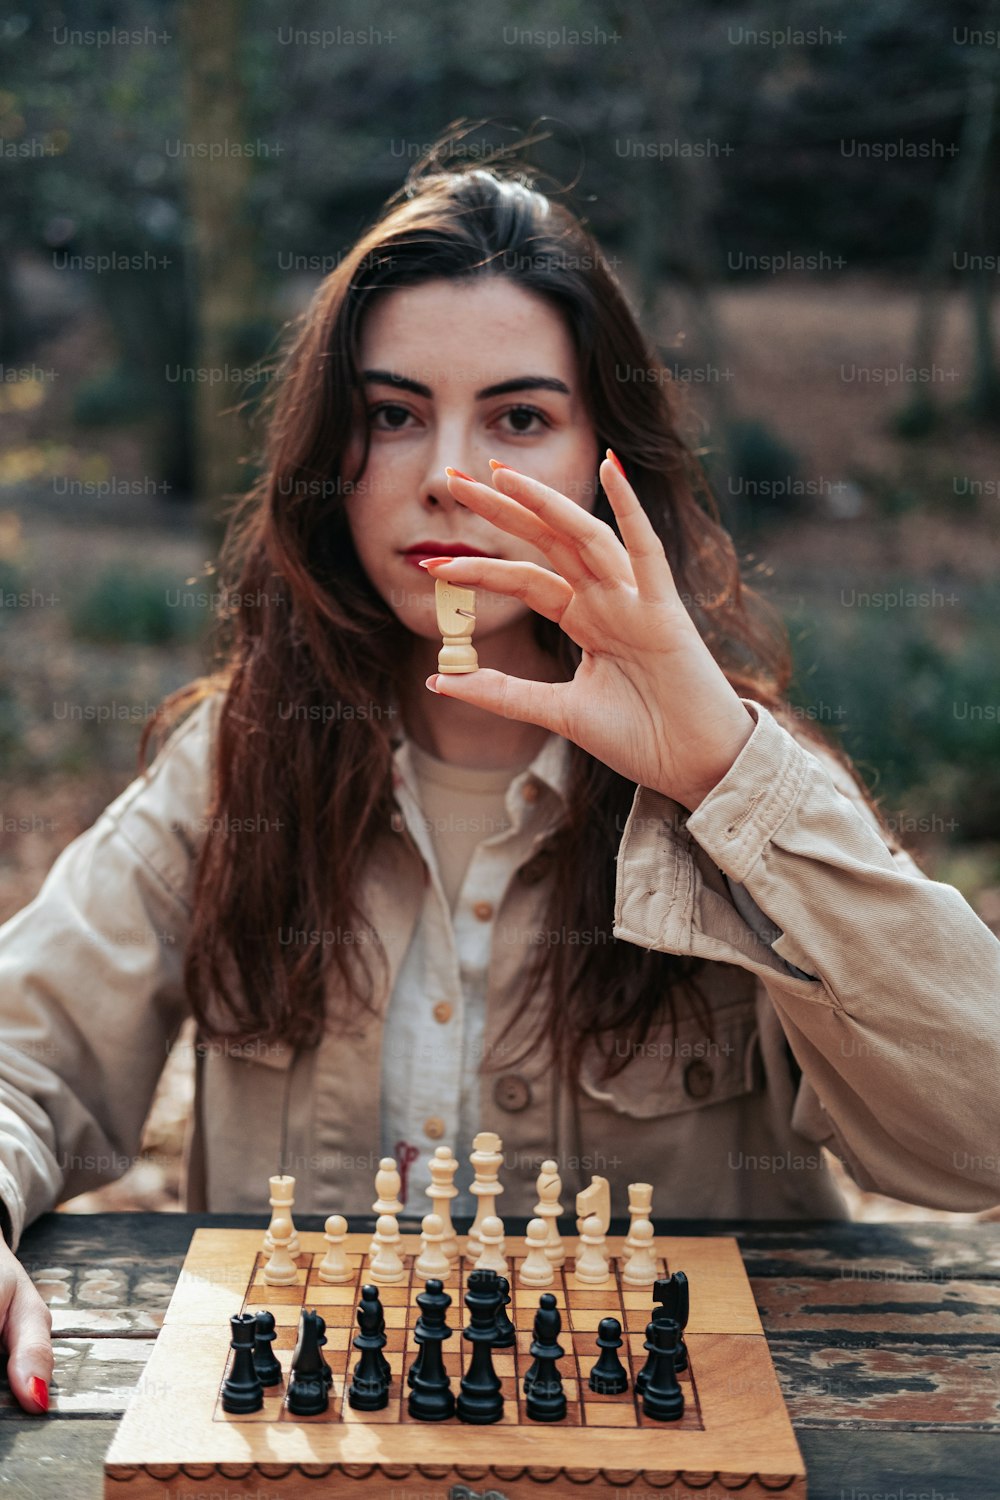 チェス盤を持ってテーブルに座っている女性